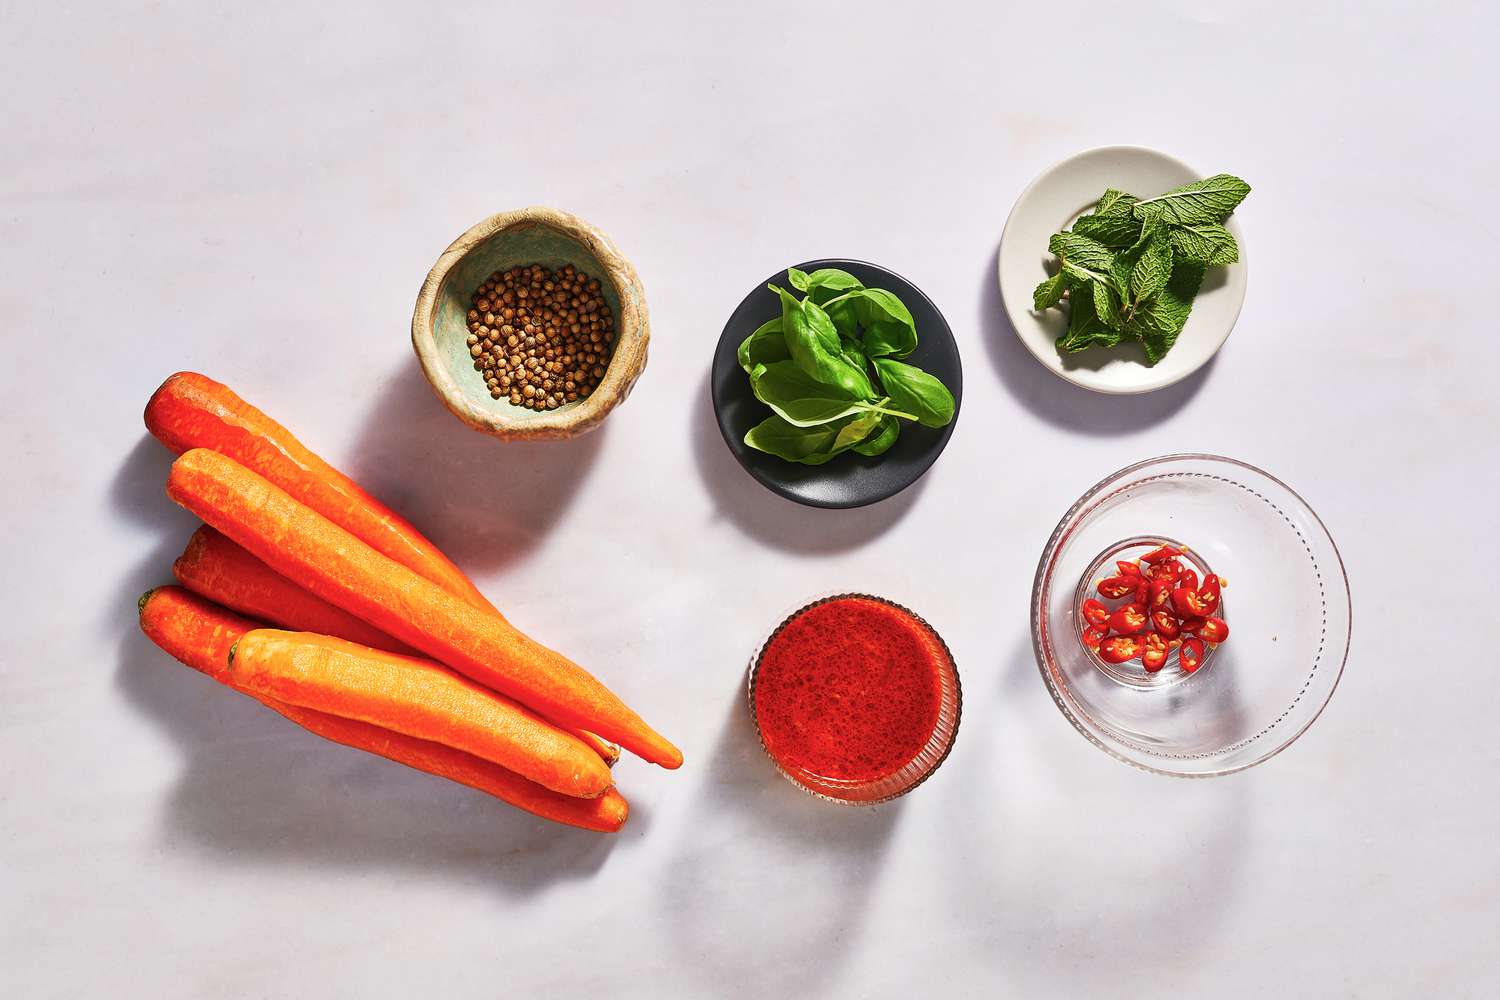 Ingredients to make carrot ribbon salad